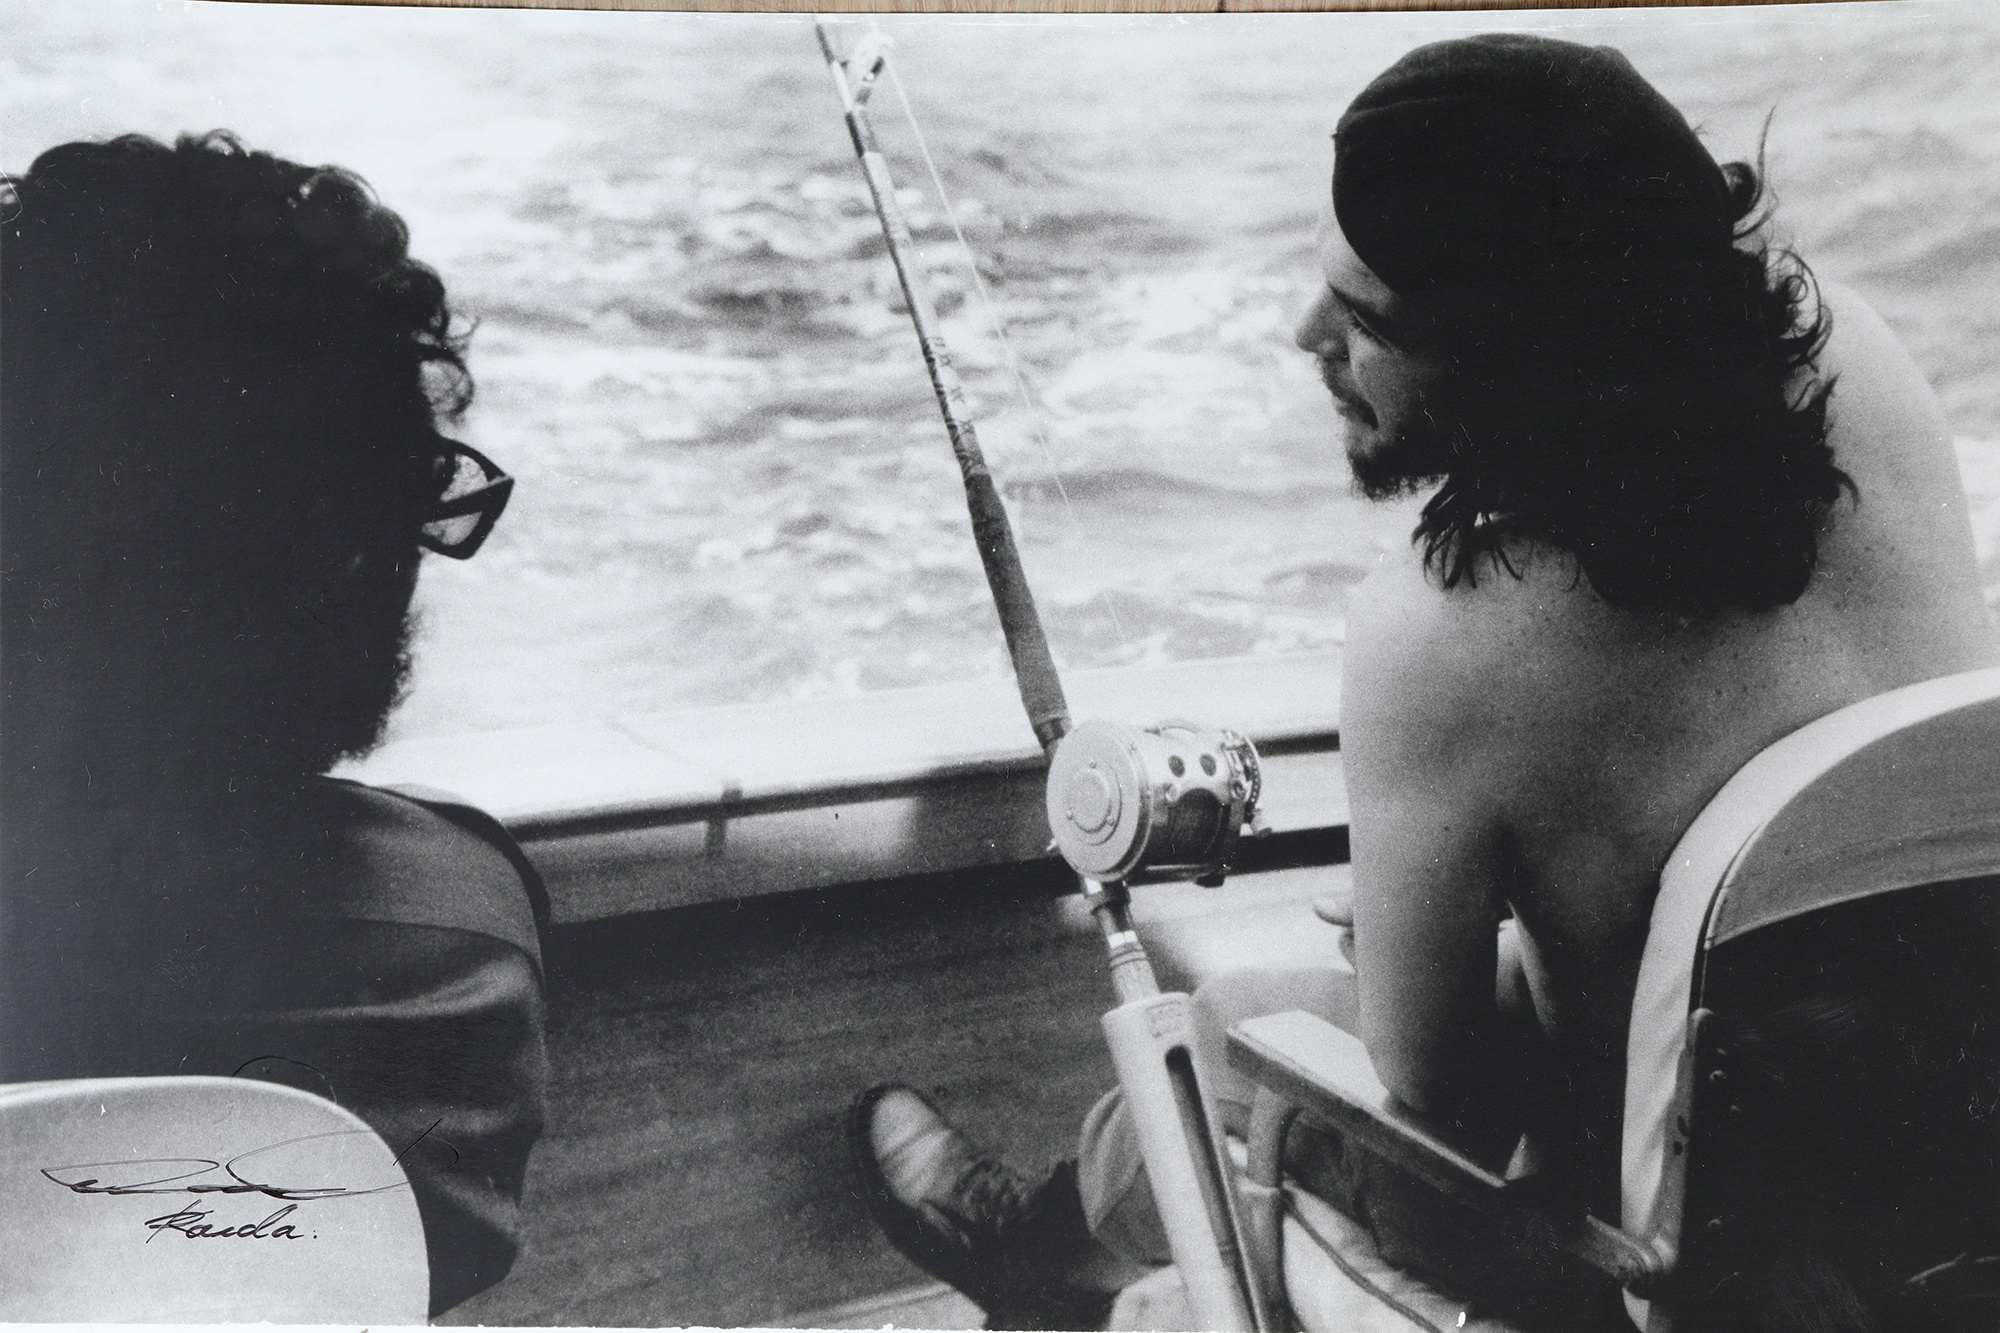 Лот № 178 — фотография «Фидель Кастро и Че рыбачат на лодке». Альберто Корда. Снимок 1960 года. Печать 1980-х годов.